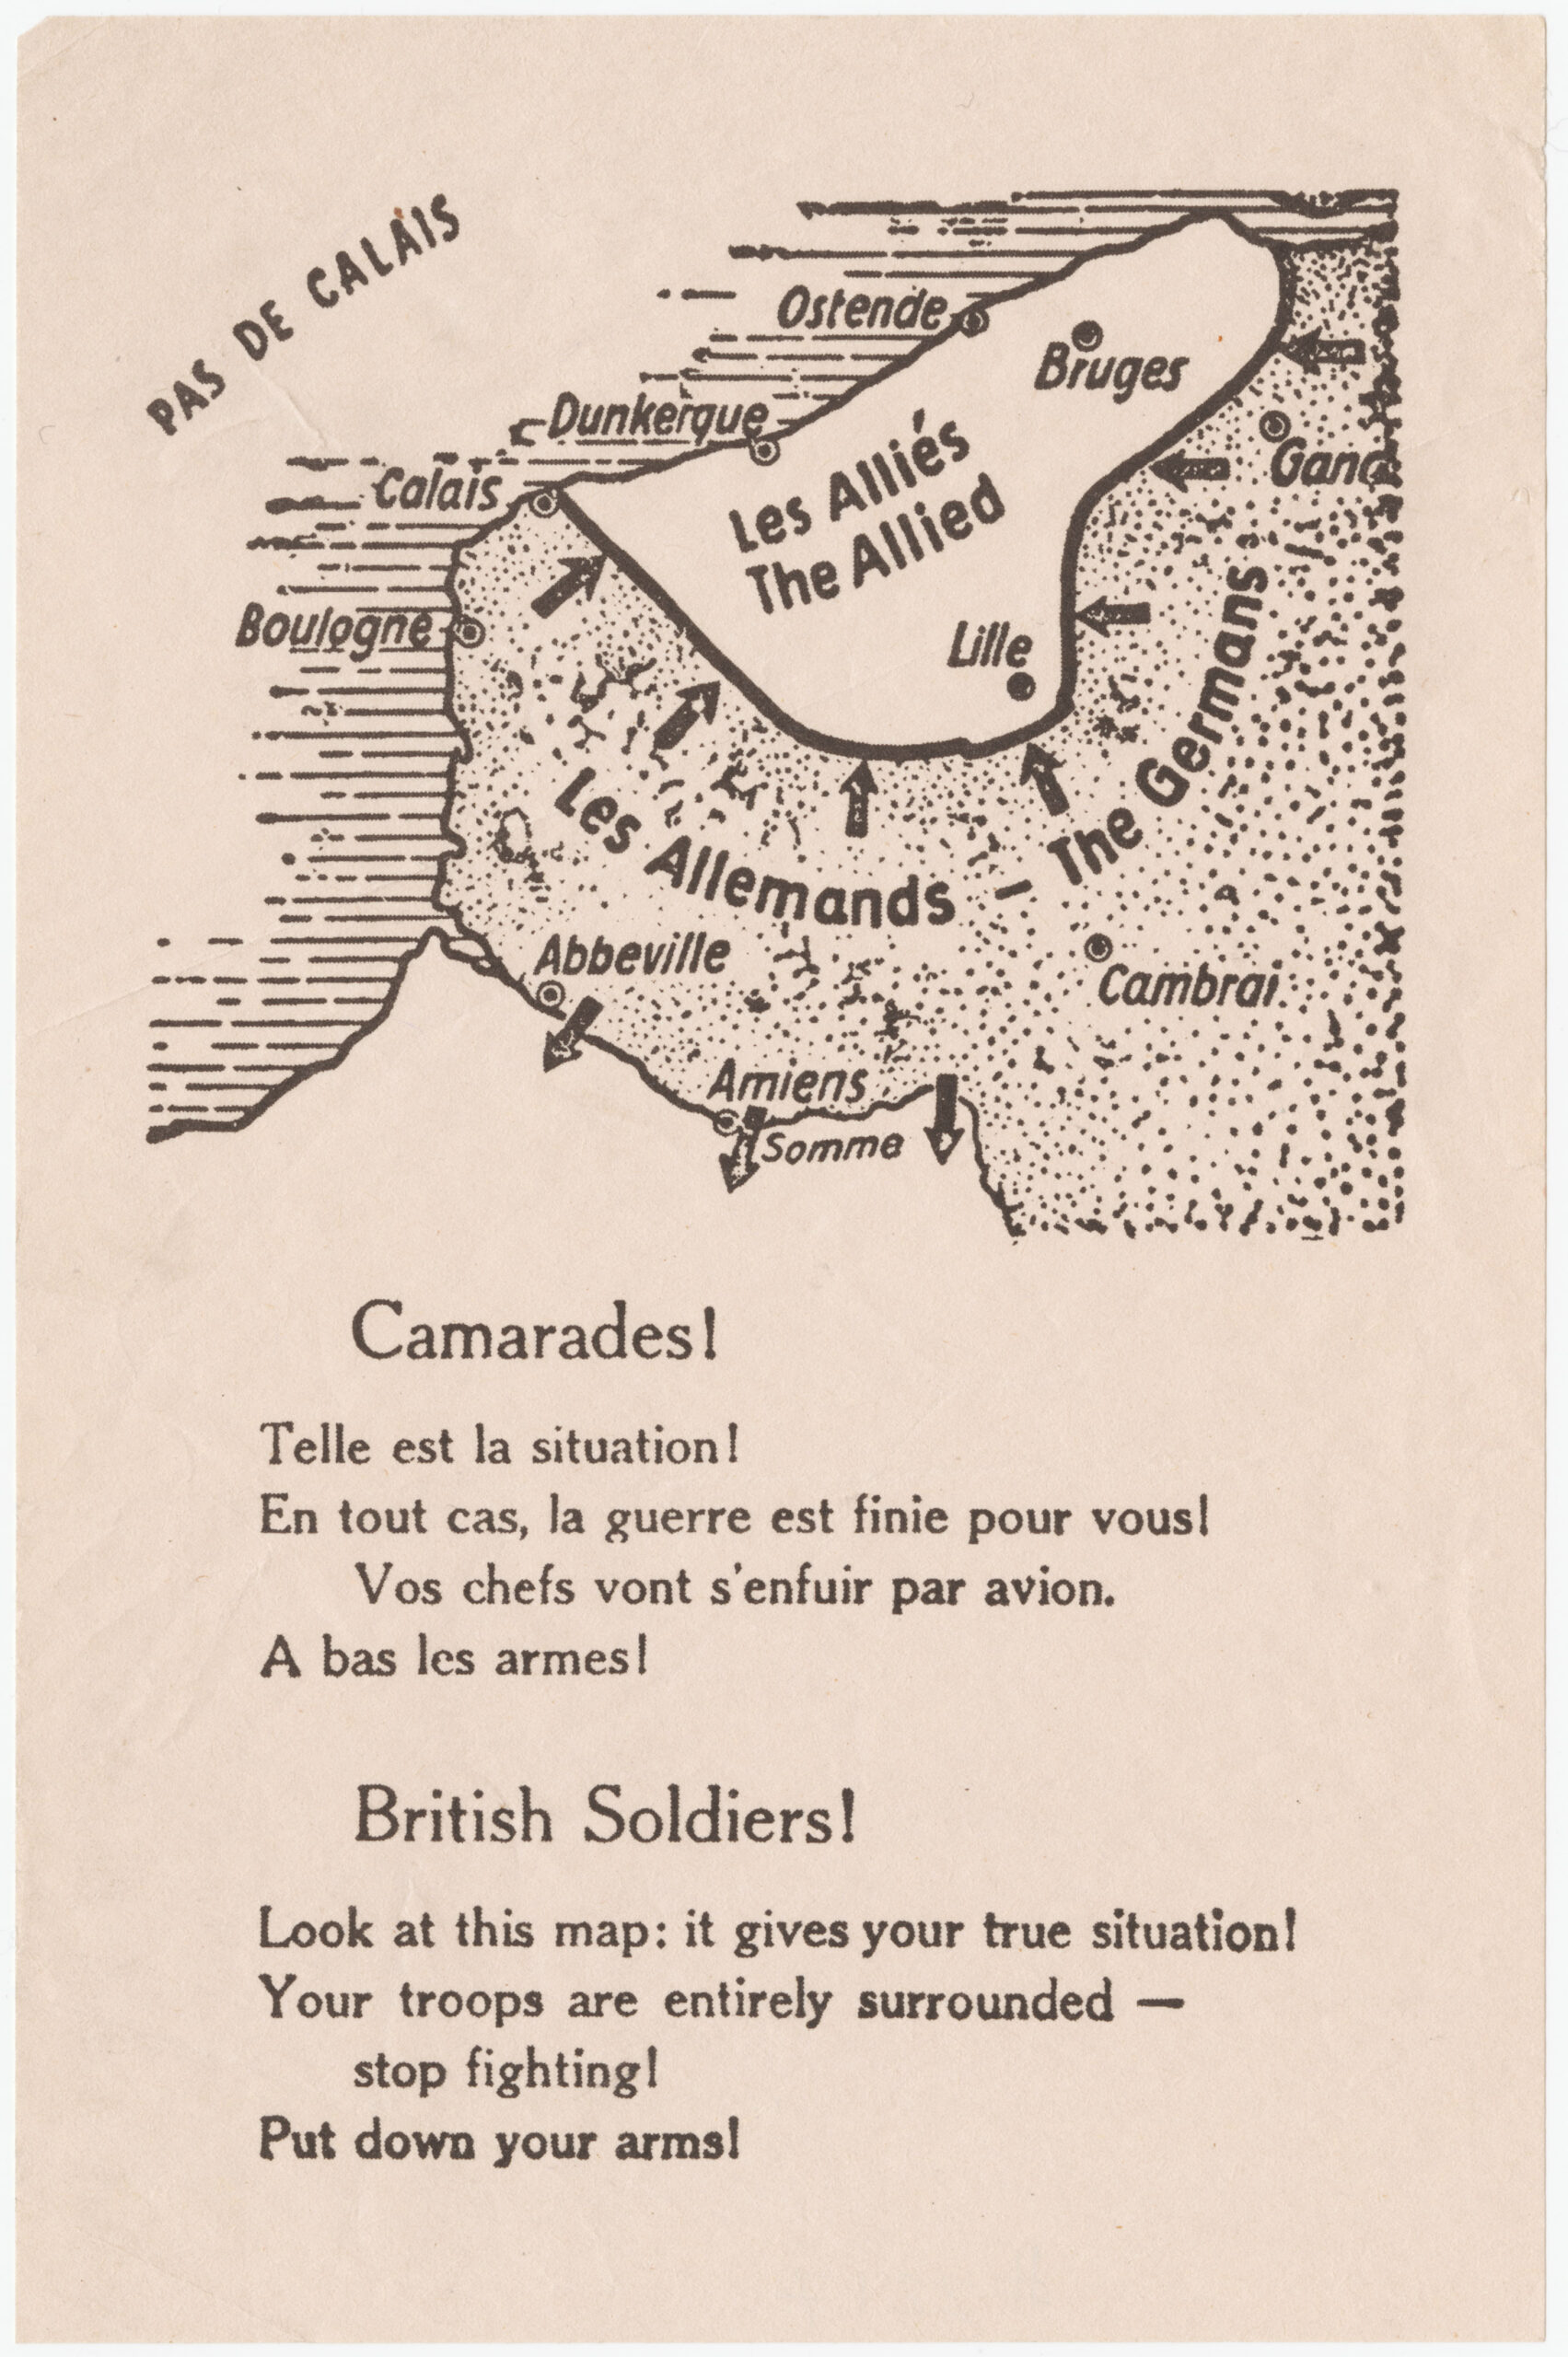 Los panfletos aéreos de Dunkerque (1940)